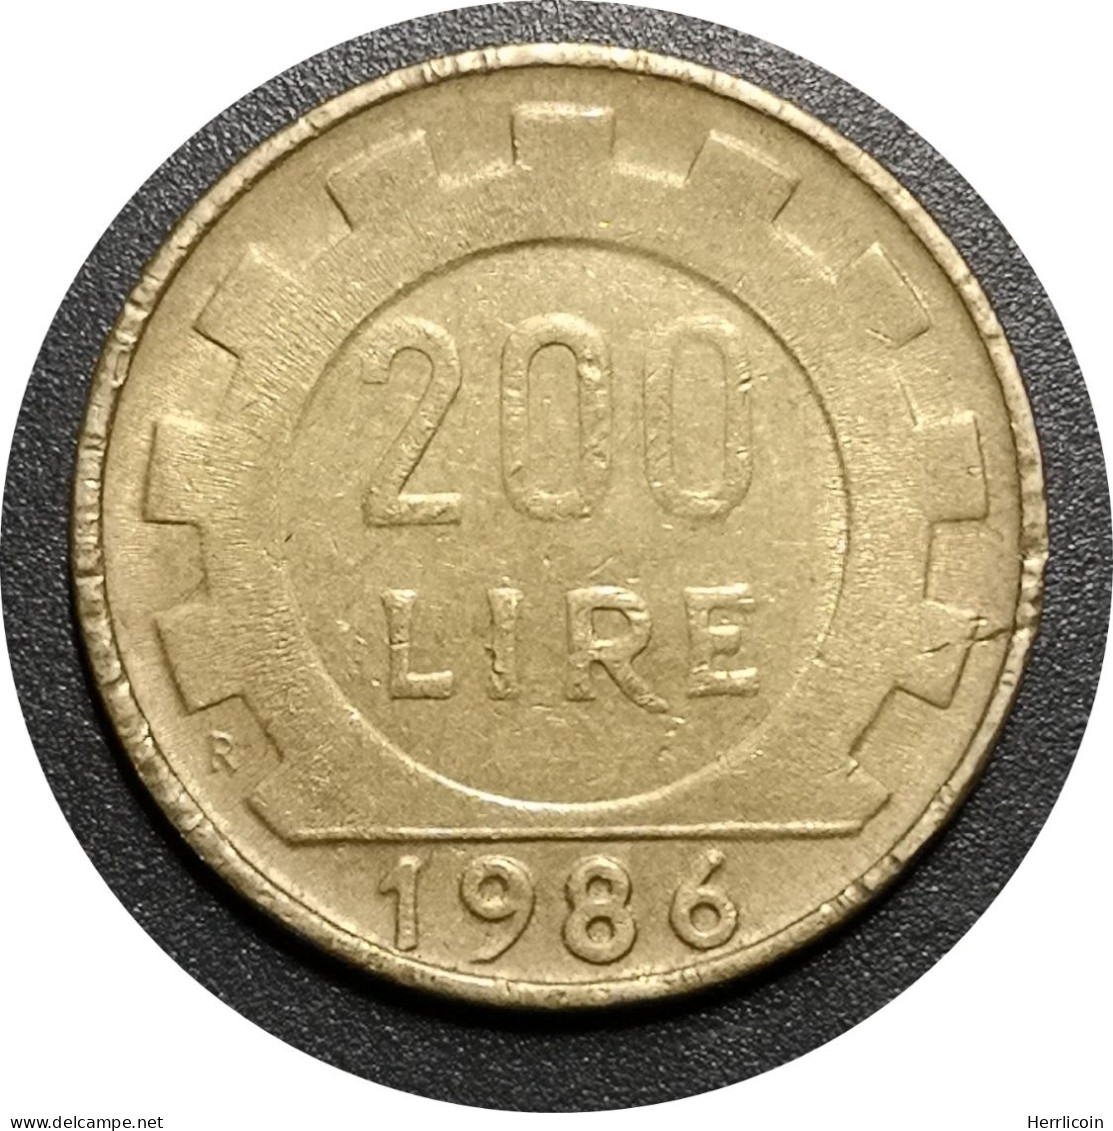 Monnaie Italie - 1986 Date épaisse - 200 Lire - 200 Liras